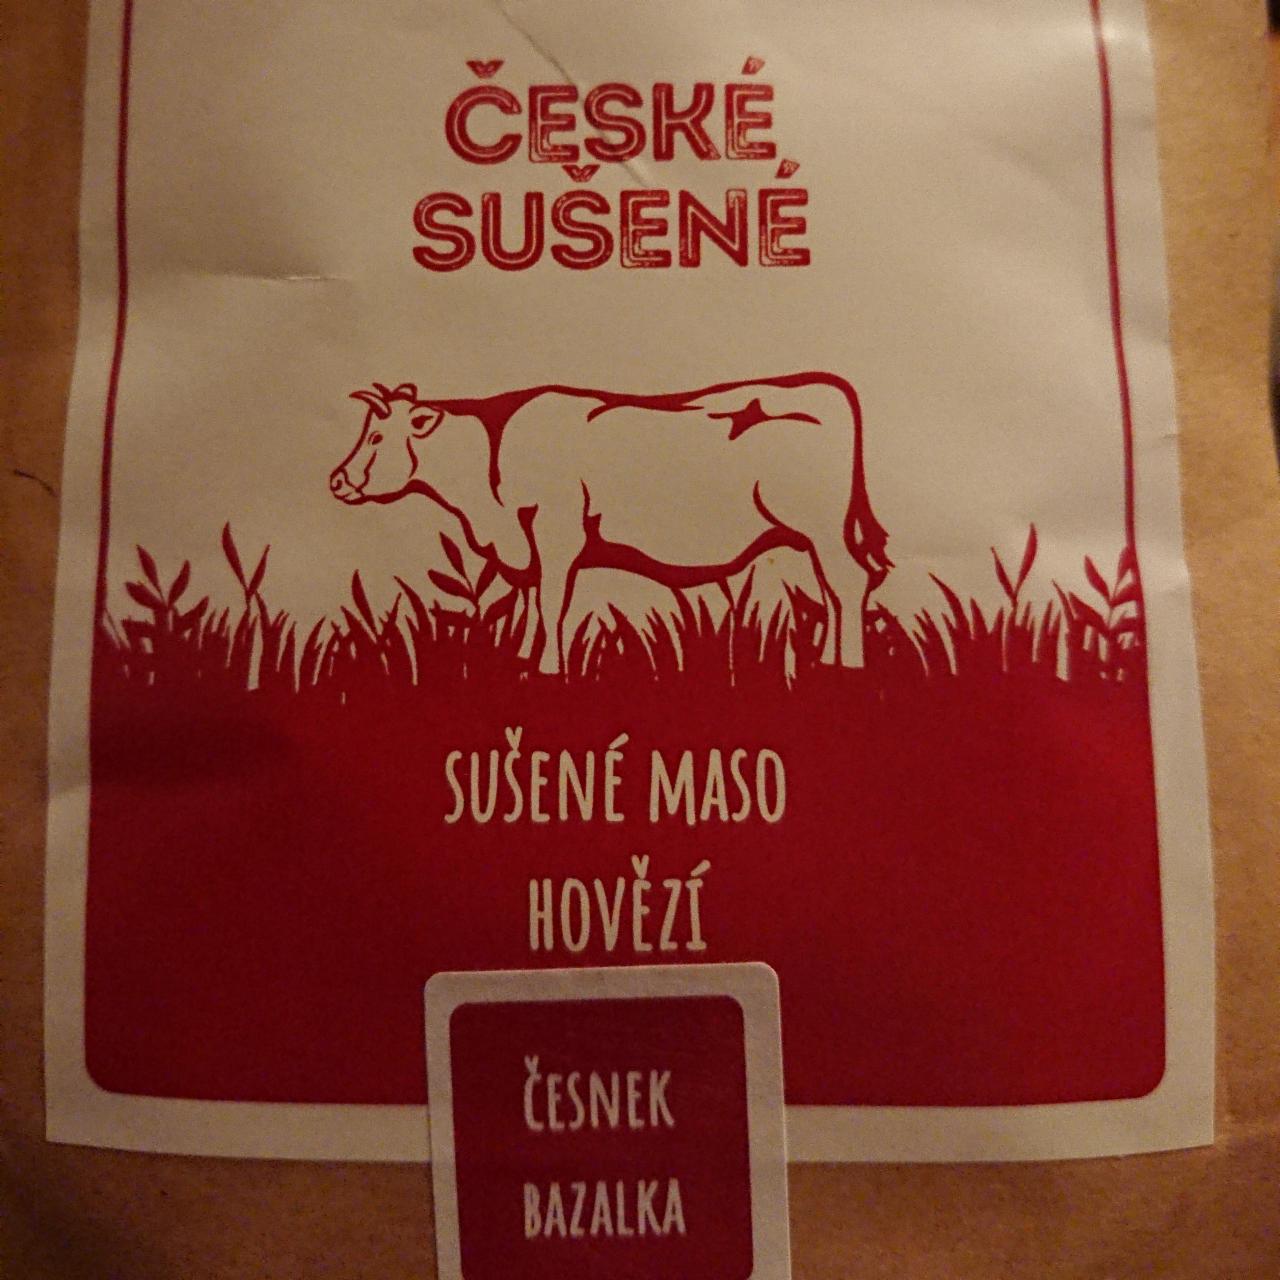 Fotografie - Sušené maso Hovězí česnek bazalka České sušené